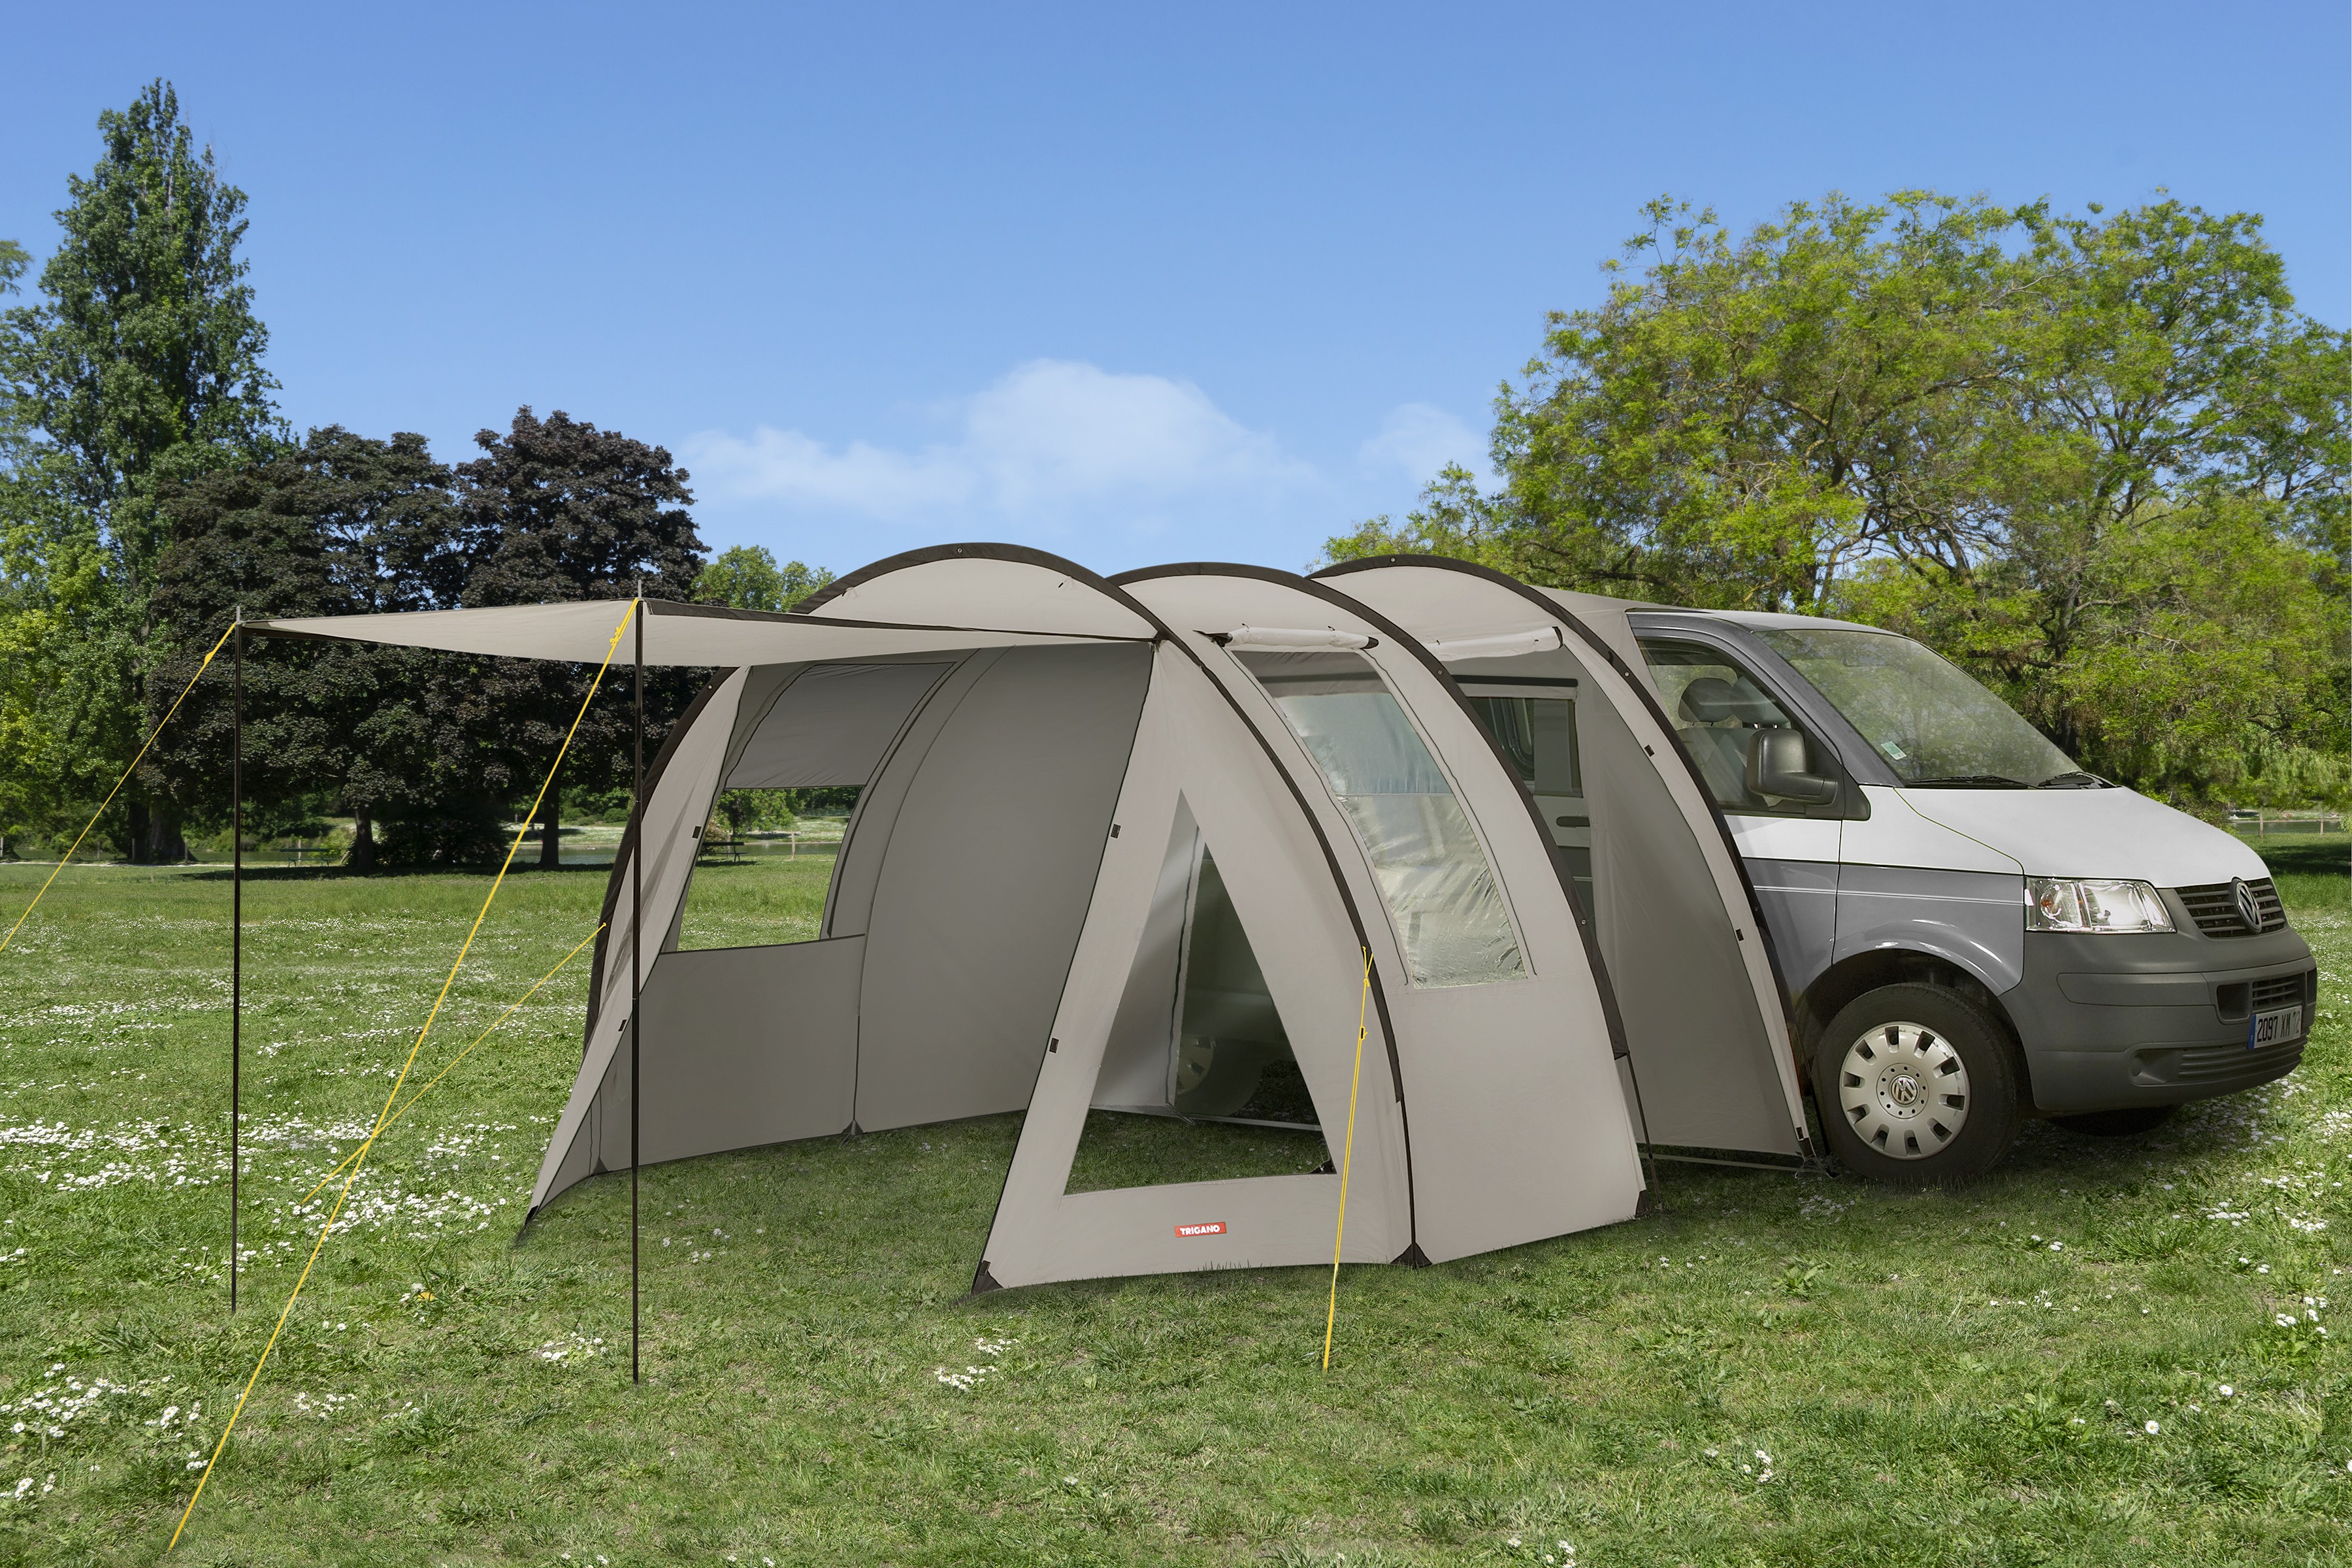 AUVENT POUR VAN BIVOUAC CAR :achat accessoires camping Loisirsnet